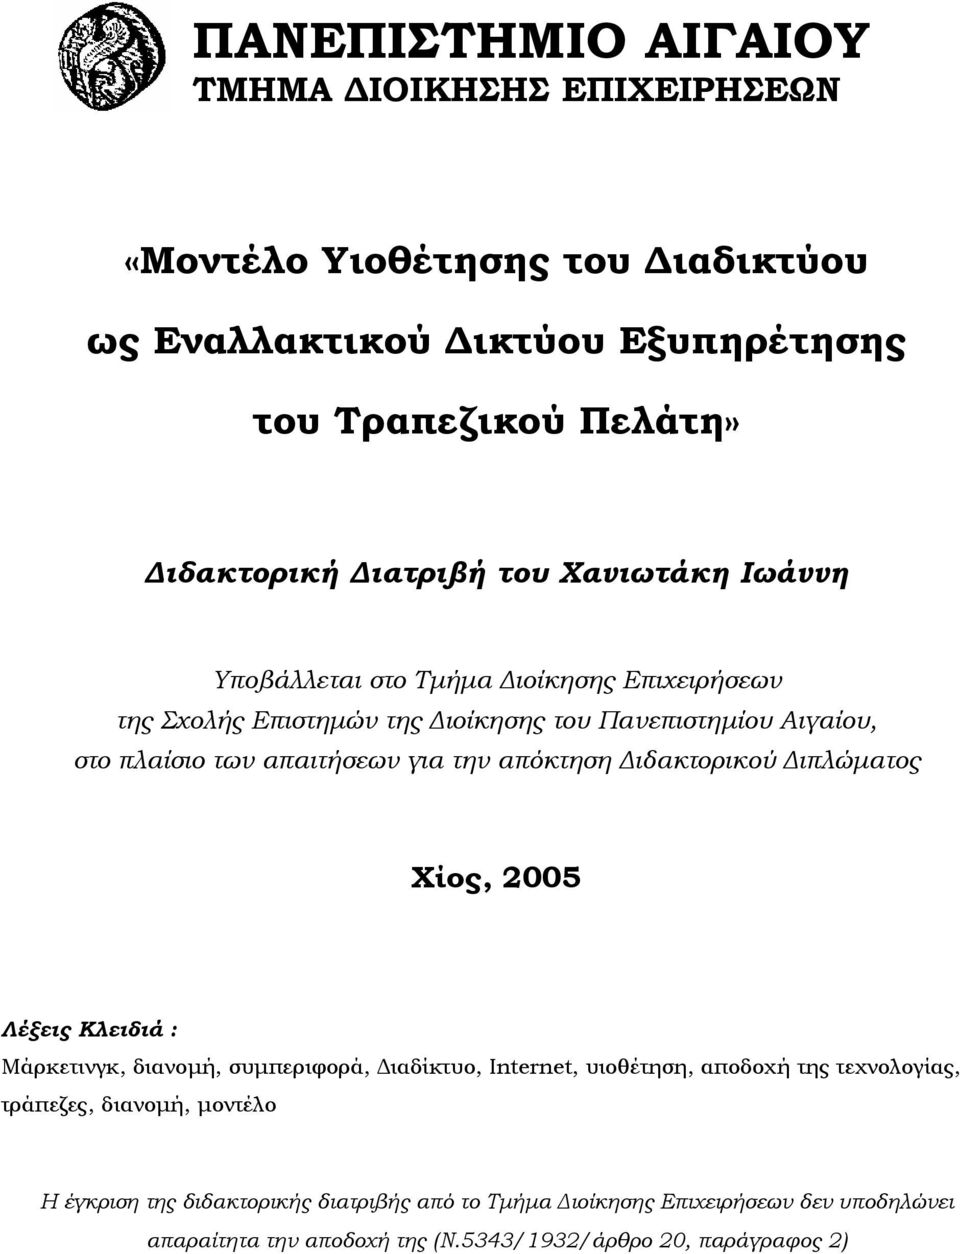 απόκτηση ιδακτορικού ιπλώµατος Χίος, 2005 Λέξεις Κλειδιά : Μάρκετινγκ, διανοµή, συµπεριφορά, ιαδίκτυο, Internet, υιοθέτηση, αποδοχή της τεχνολογίας, τράπεζες,